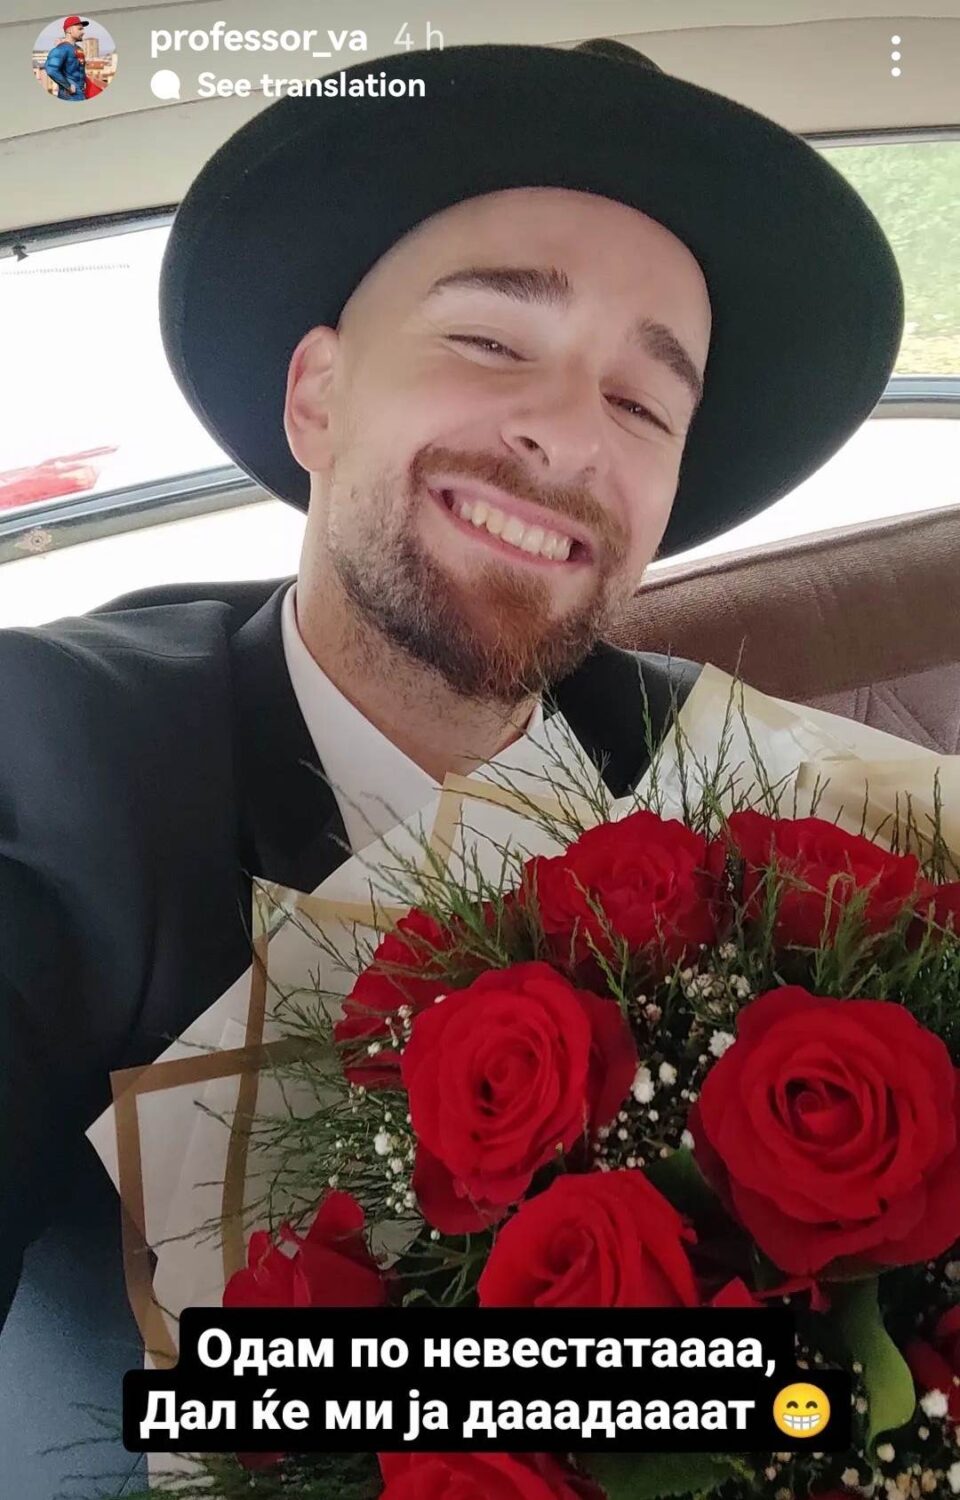 Со букет црвени рози и олдтајмер Виктор Апостоловски отиде по невестата